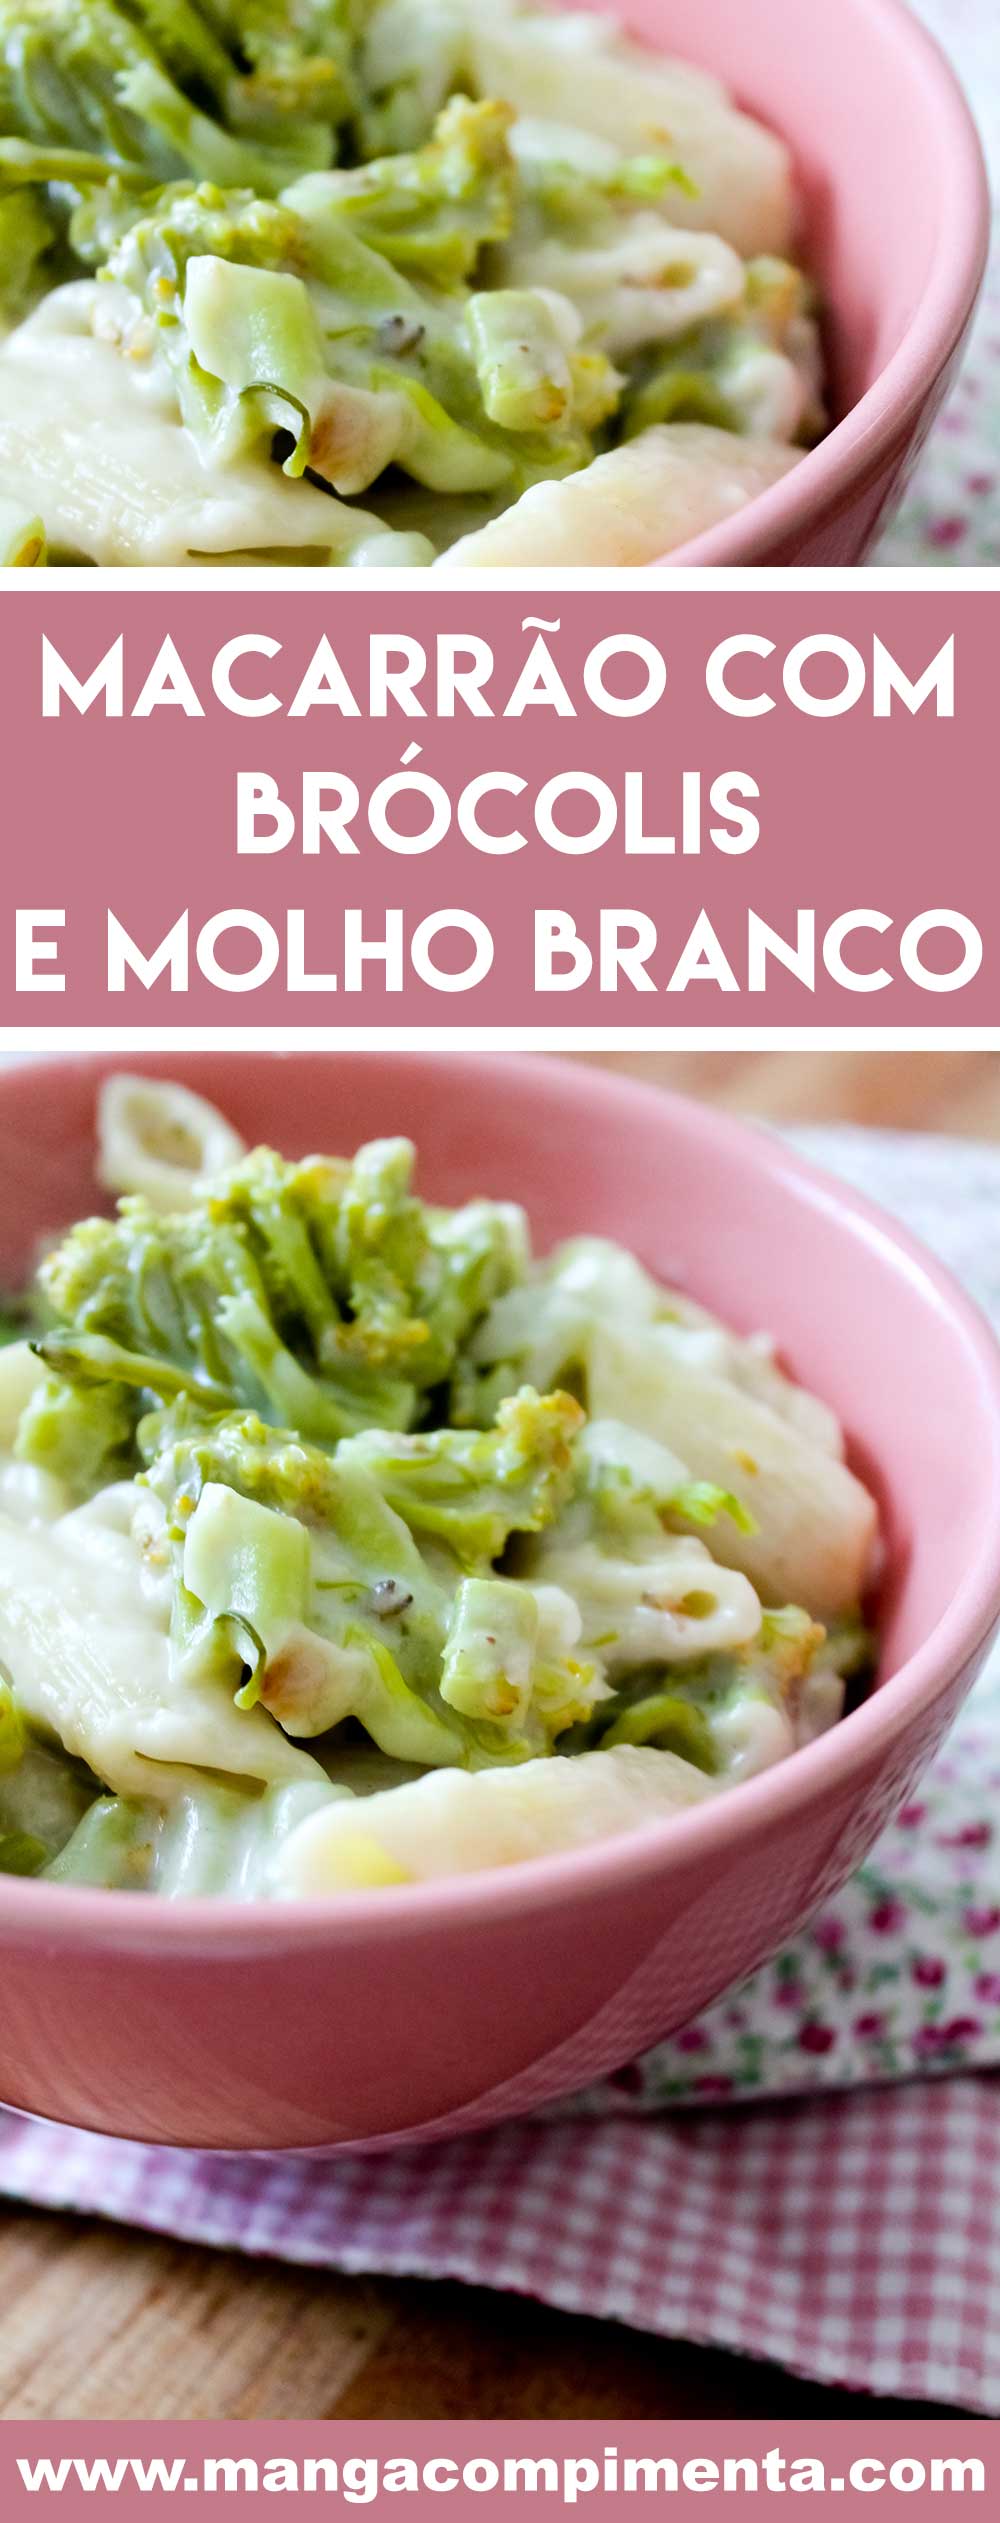 Receita de Macarrão com Brócolis e Molho Branco - um prato que te abraça e mata a fome!